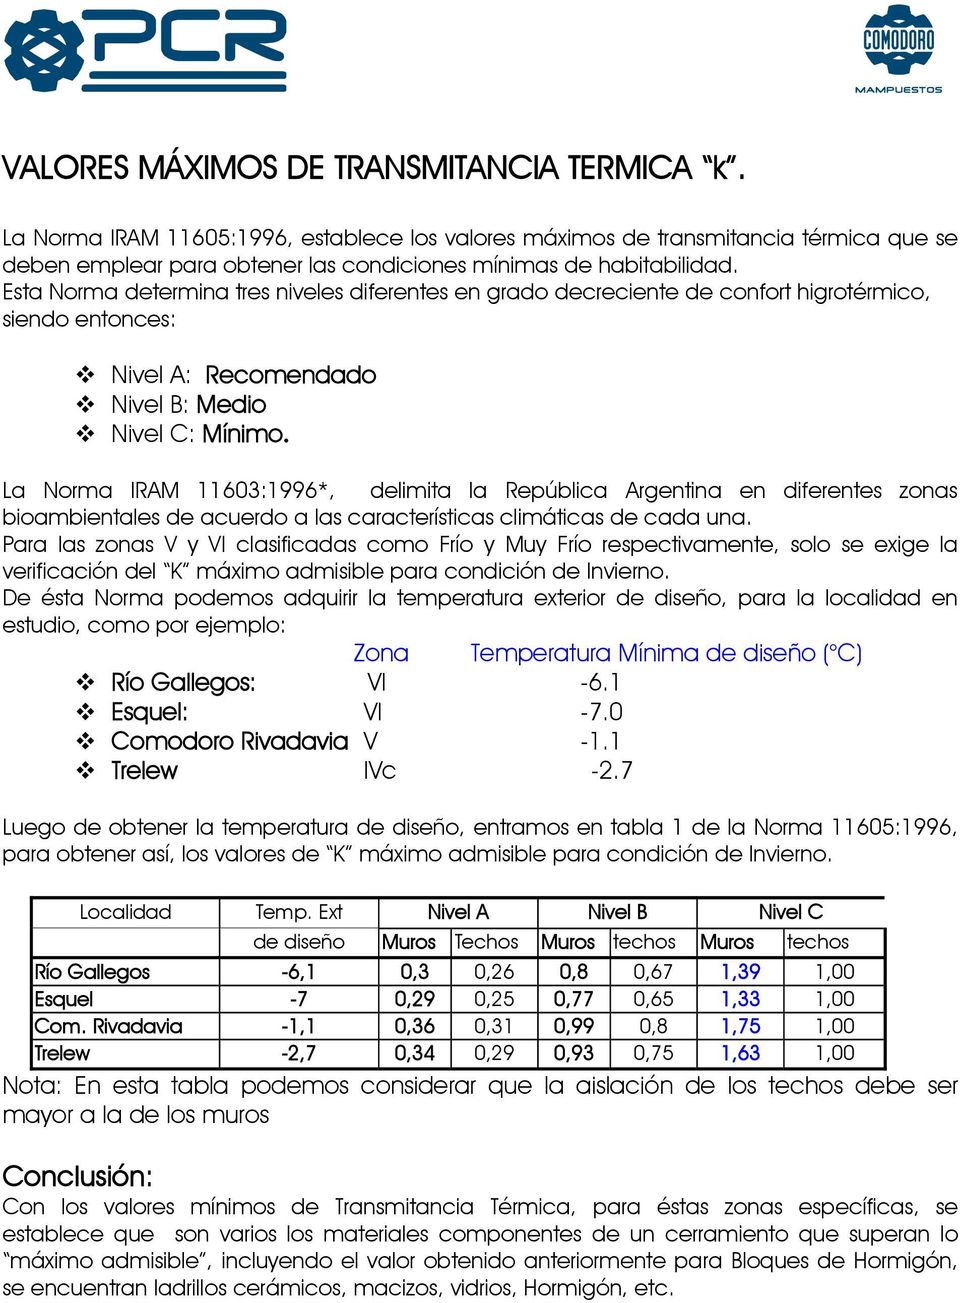 La Norma IRAM 11603:1996*, delimita la República Argentina en diferentes zonas bioambientales de acuerdo a las características climáticas de cada una.